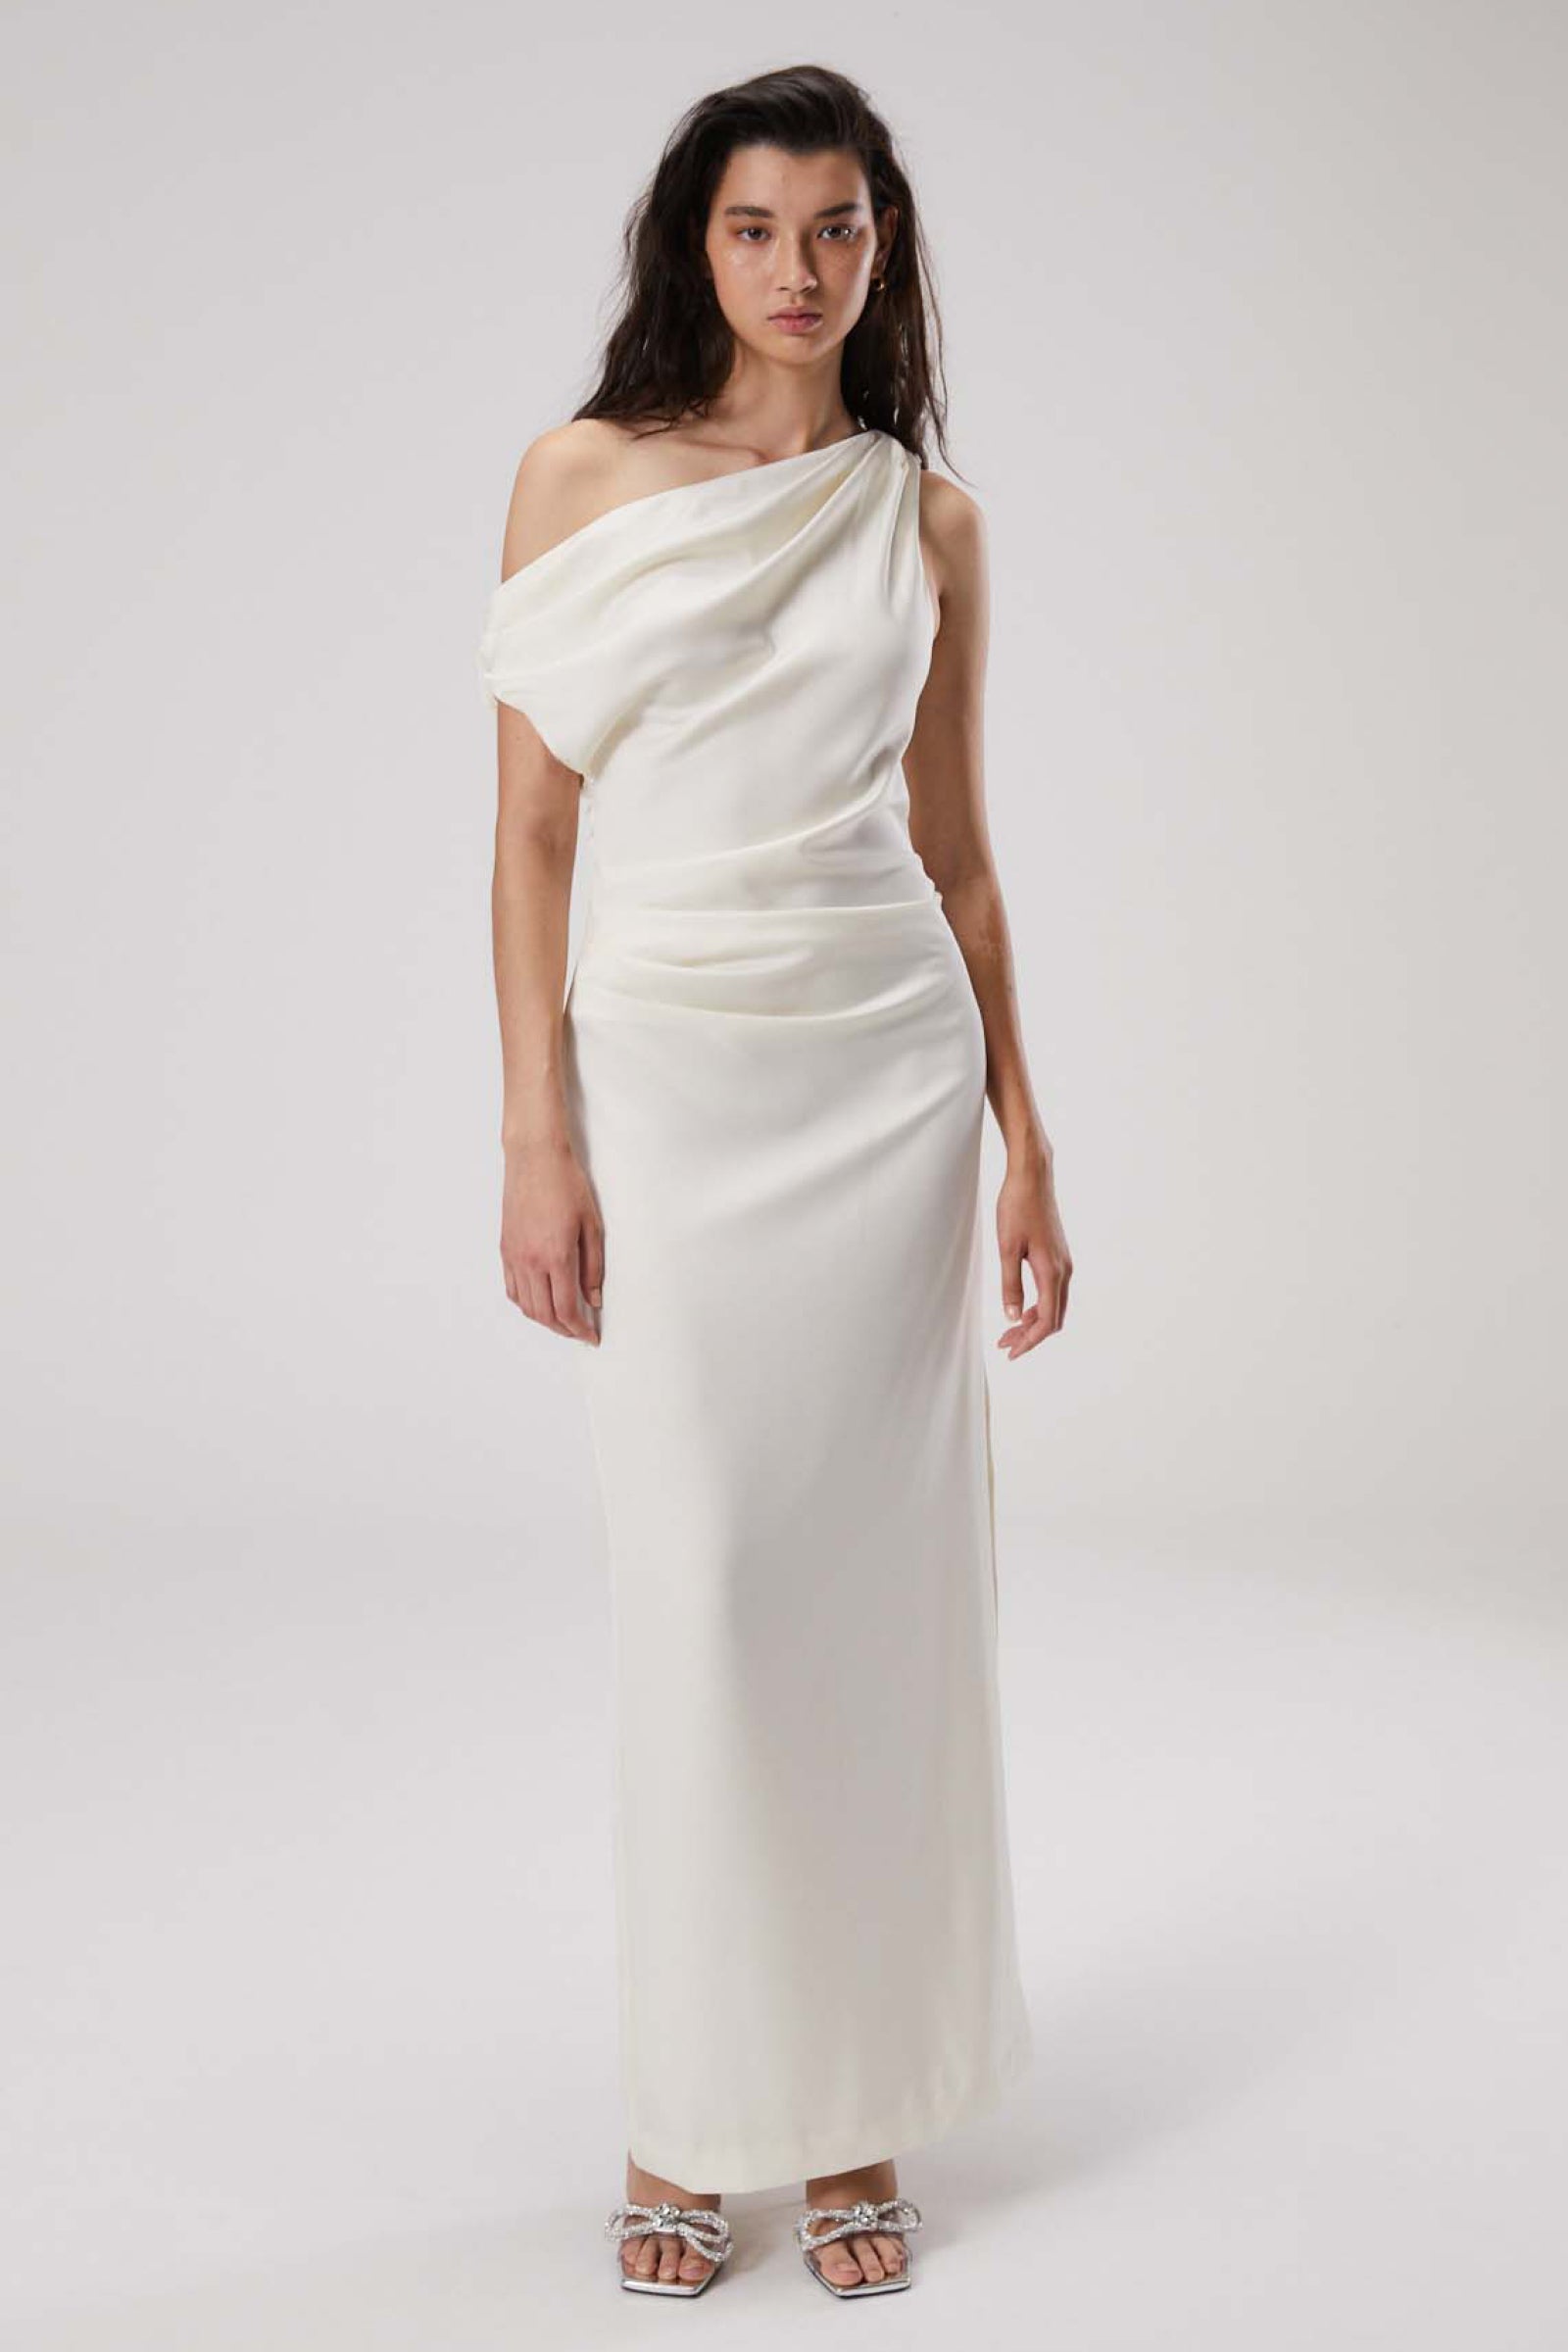 White satin drape gown